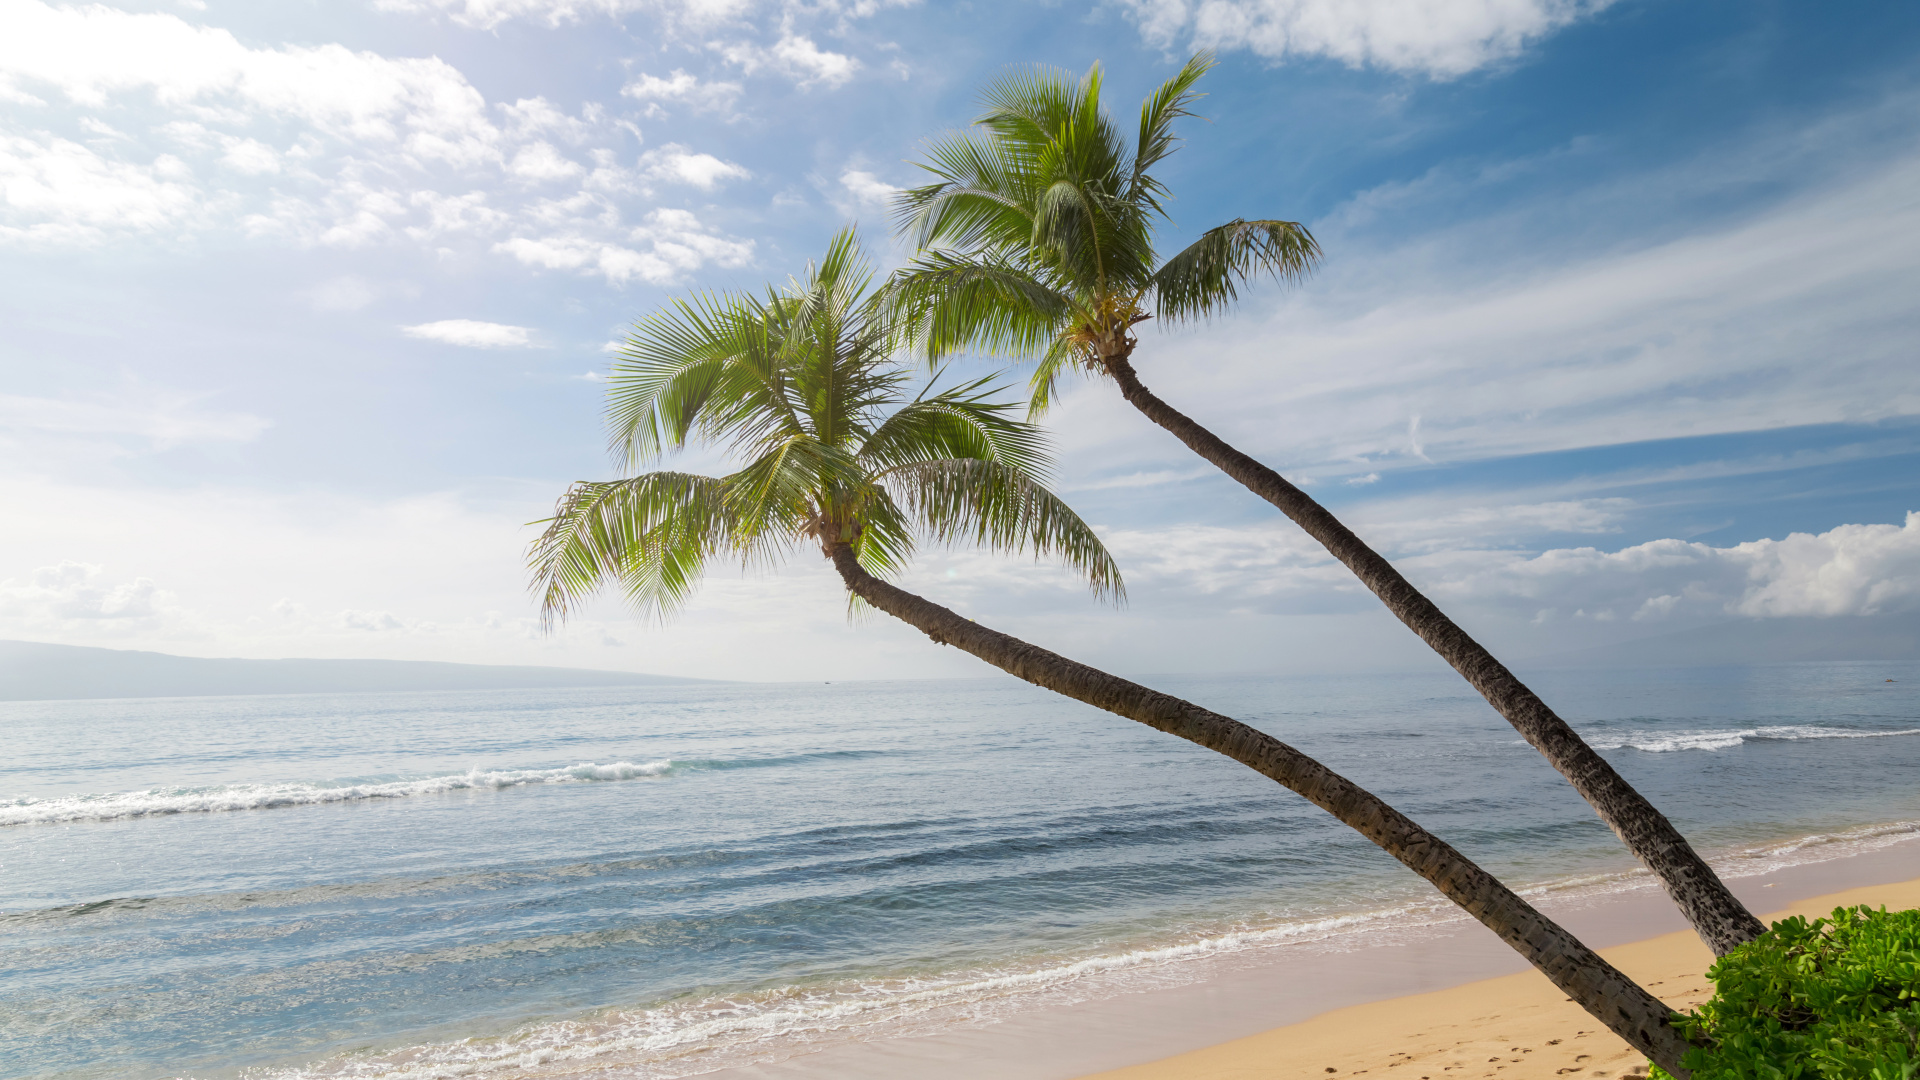 棕榈树, 夏威夷, 海岸, 海洋, 性质 壁纸 1920x1080 允许